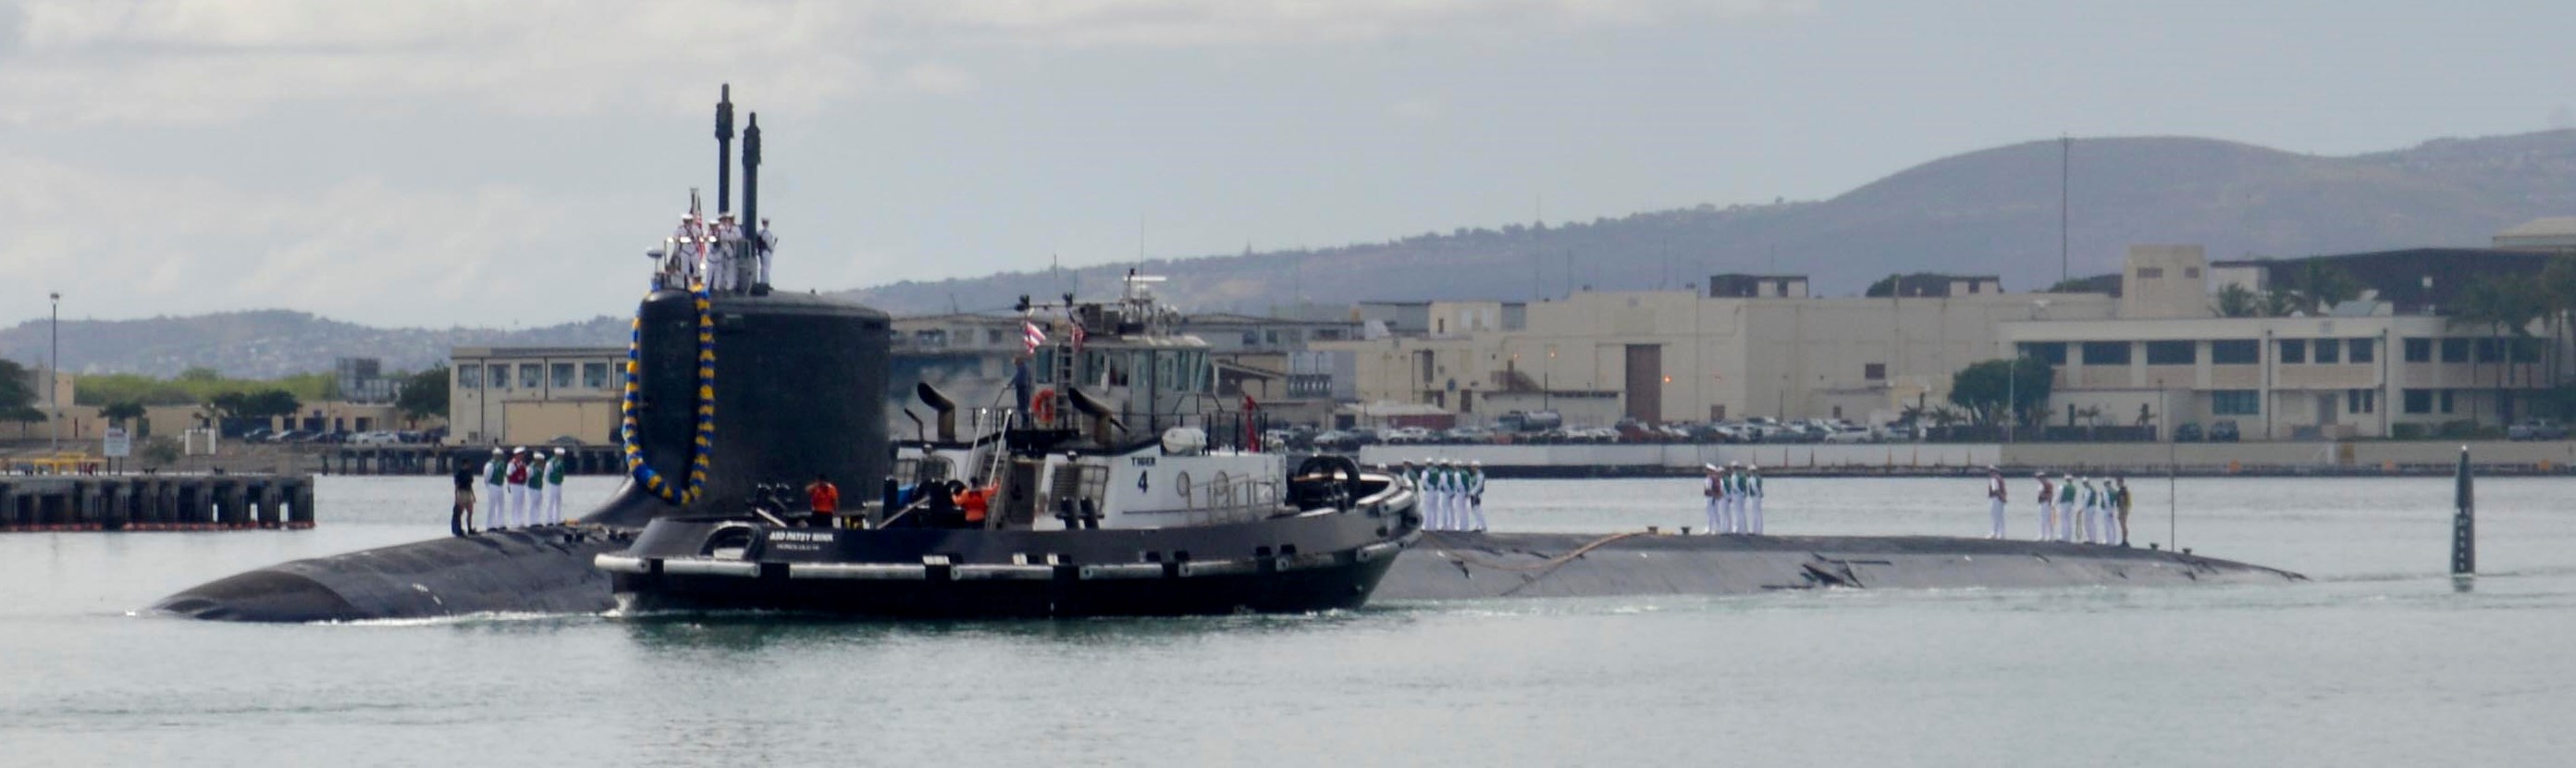 ssn-776 uss hawaii virginia class attack submarine us navy 2015 03 pearl harbor hawaii